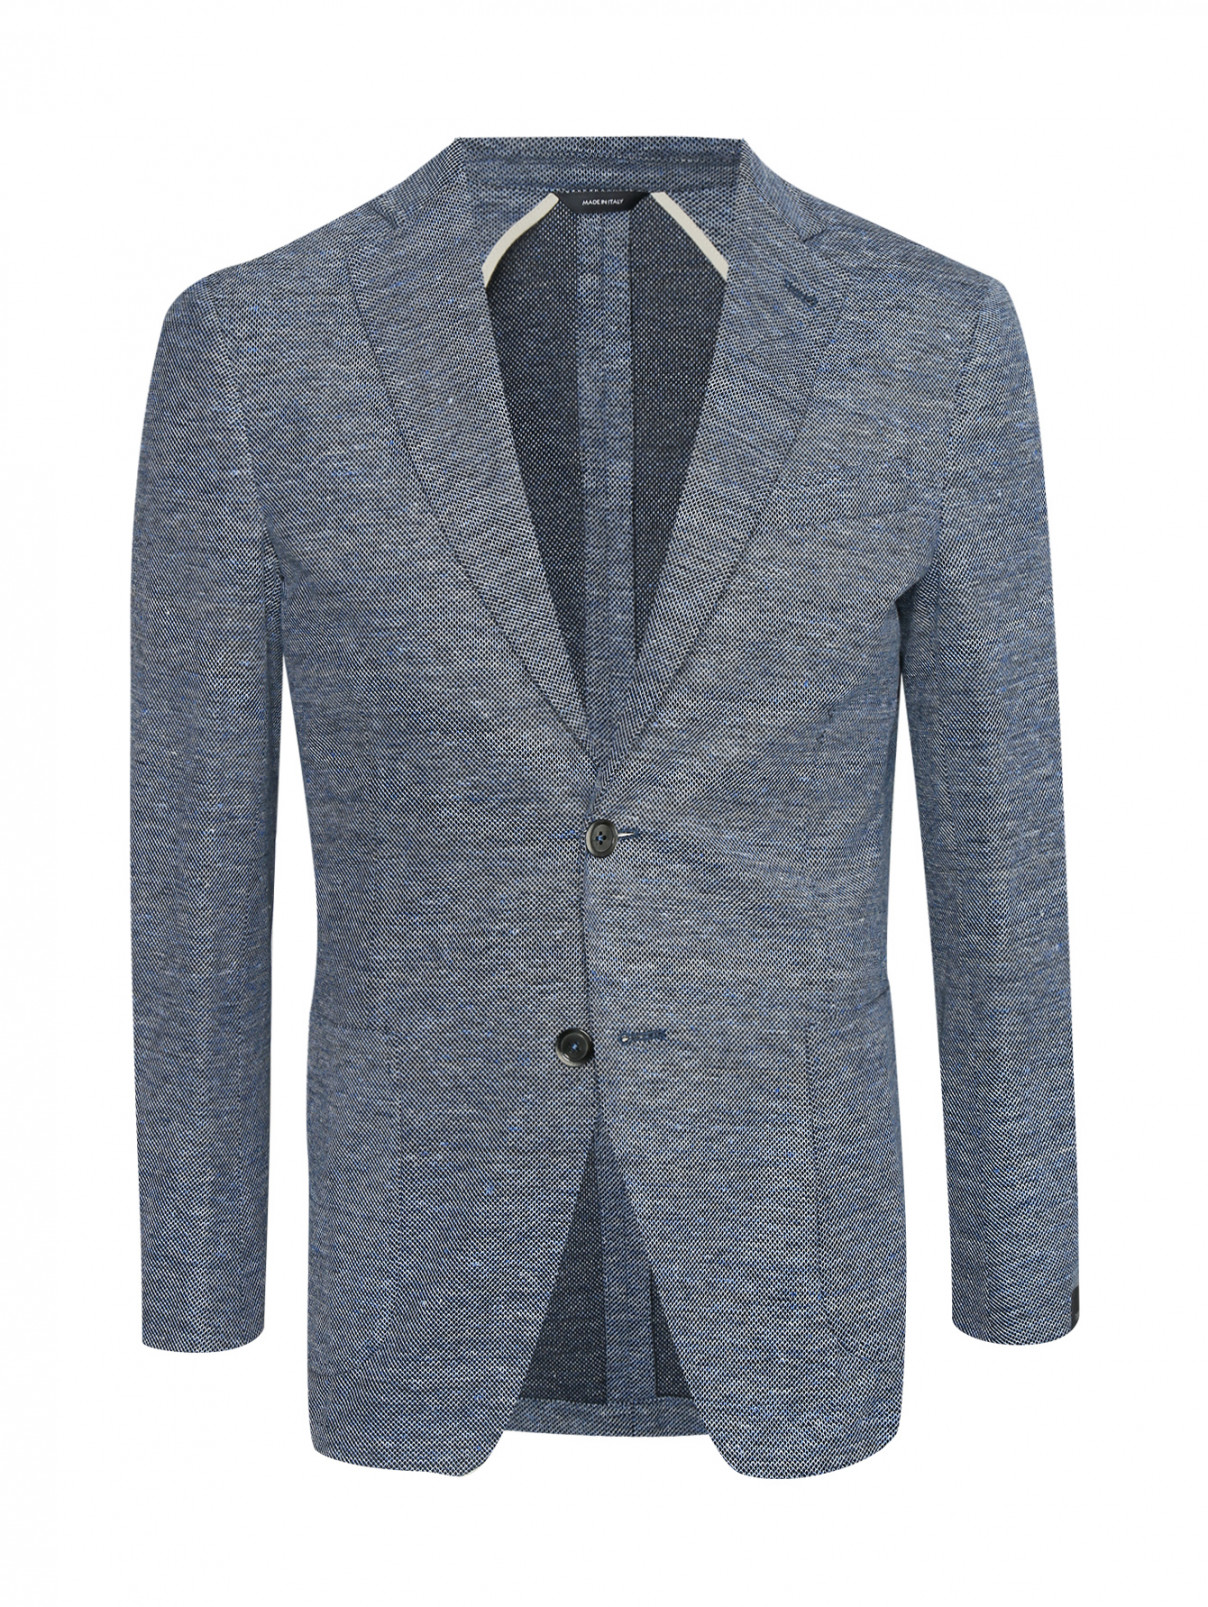 Трикотажный пиджак из хлопка и льна Tombolini  –  Общий вид  – Цвет:  Синий